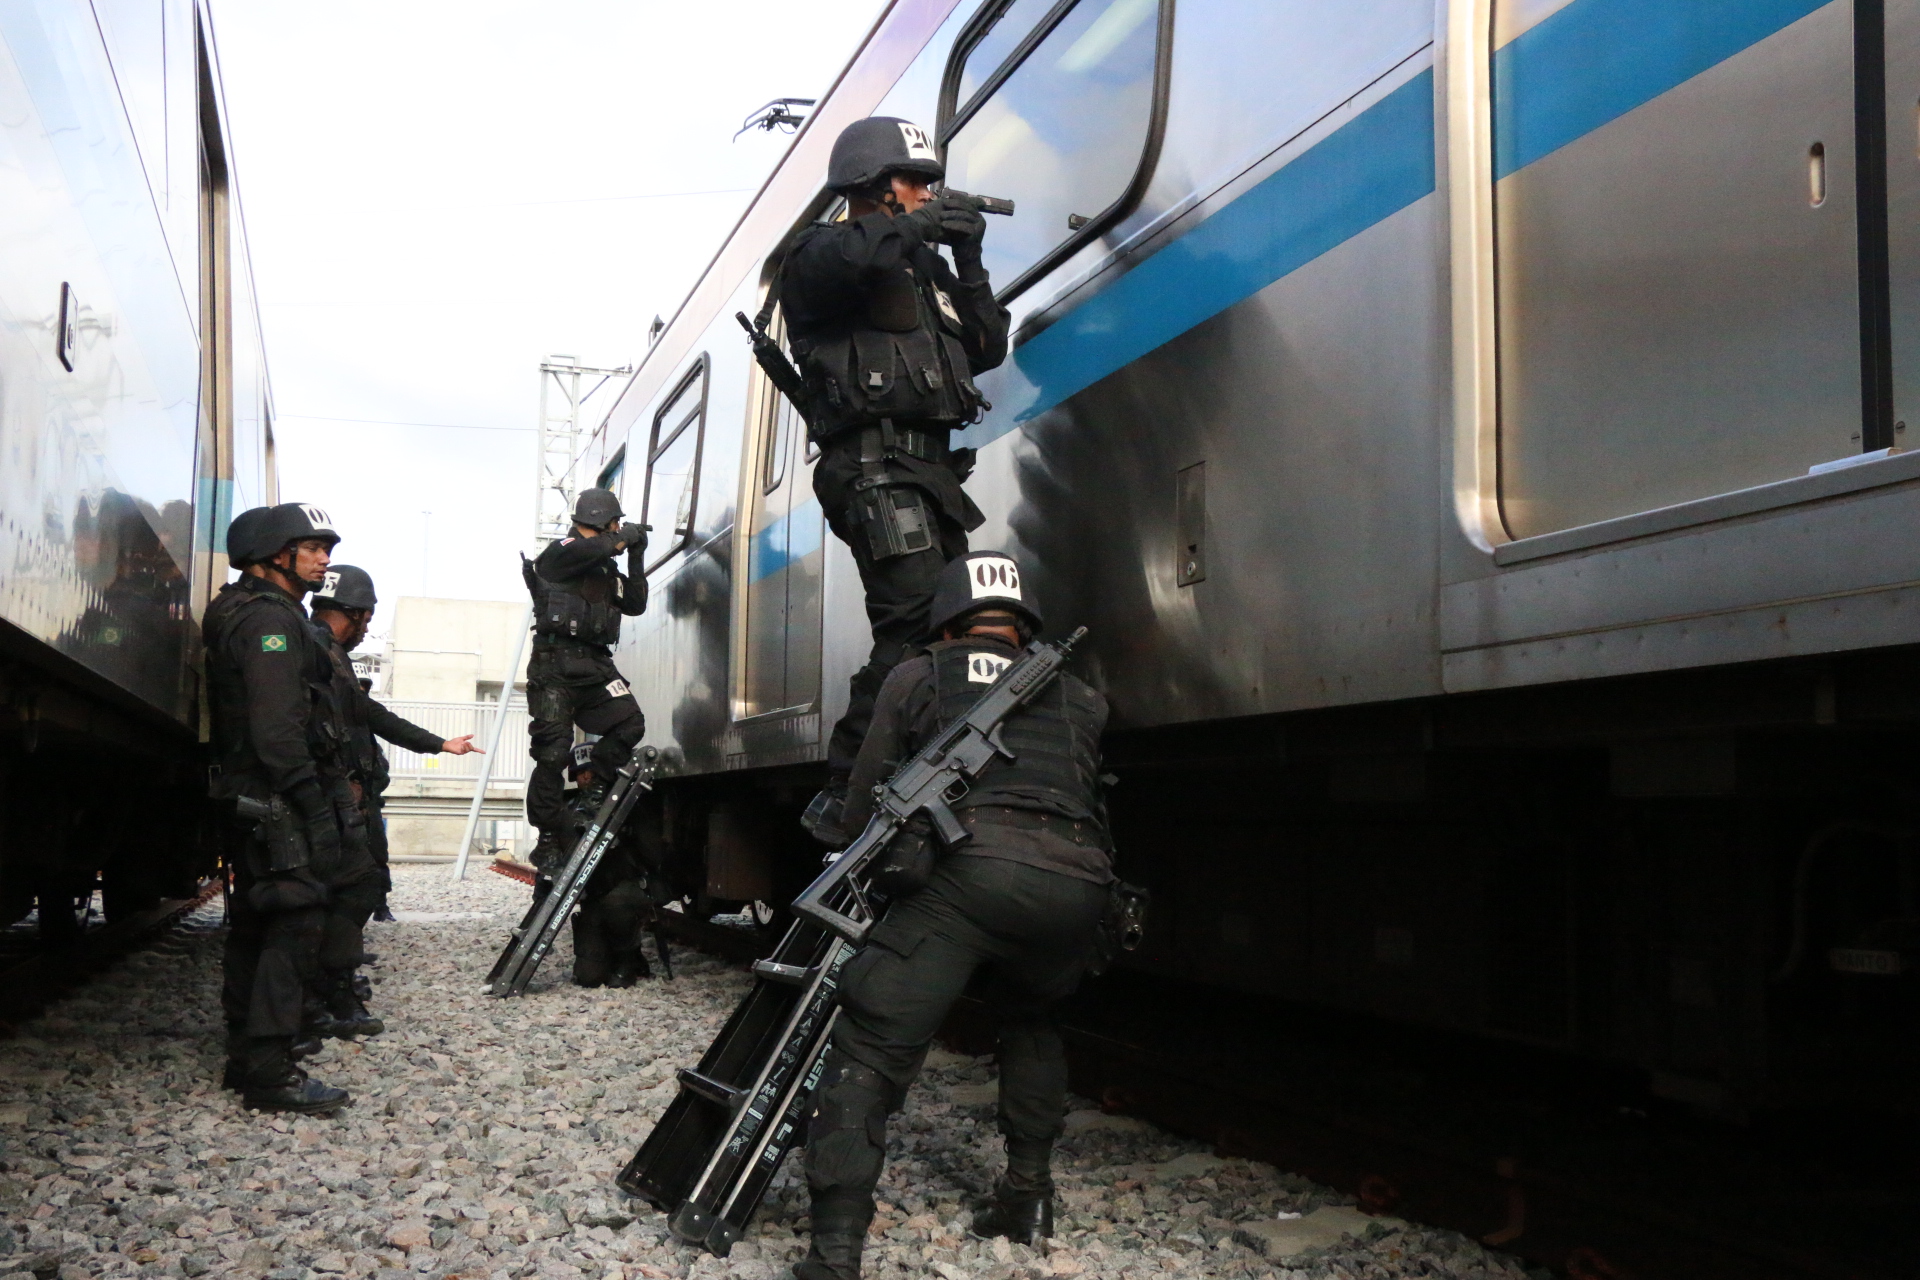 Bope simula invasão tática no metrô de Salvador